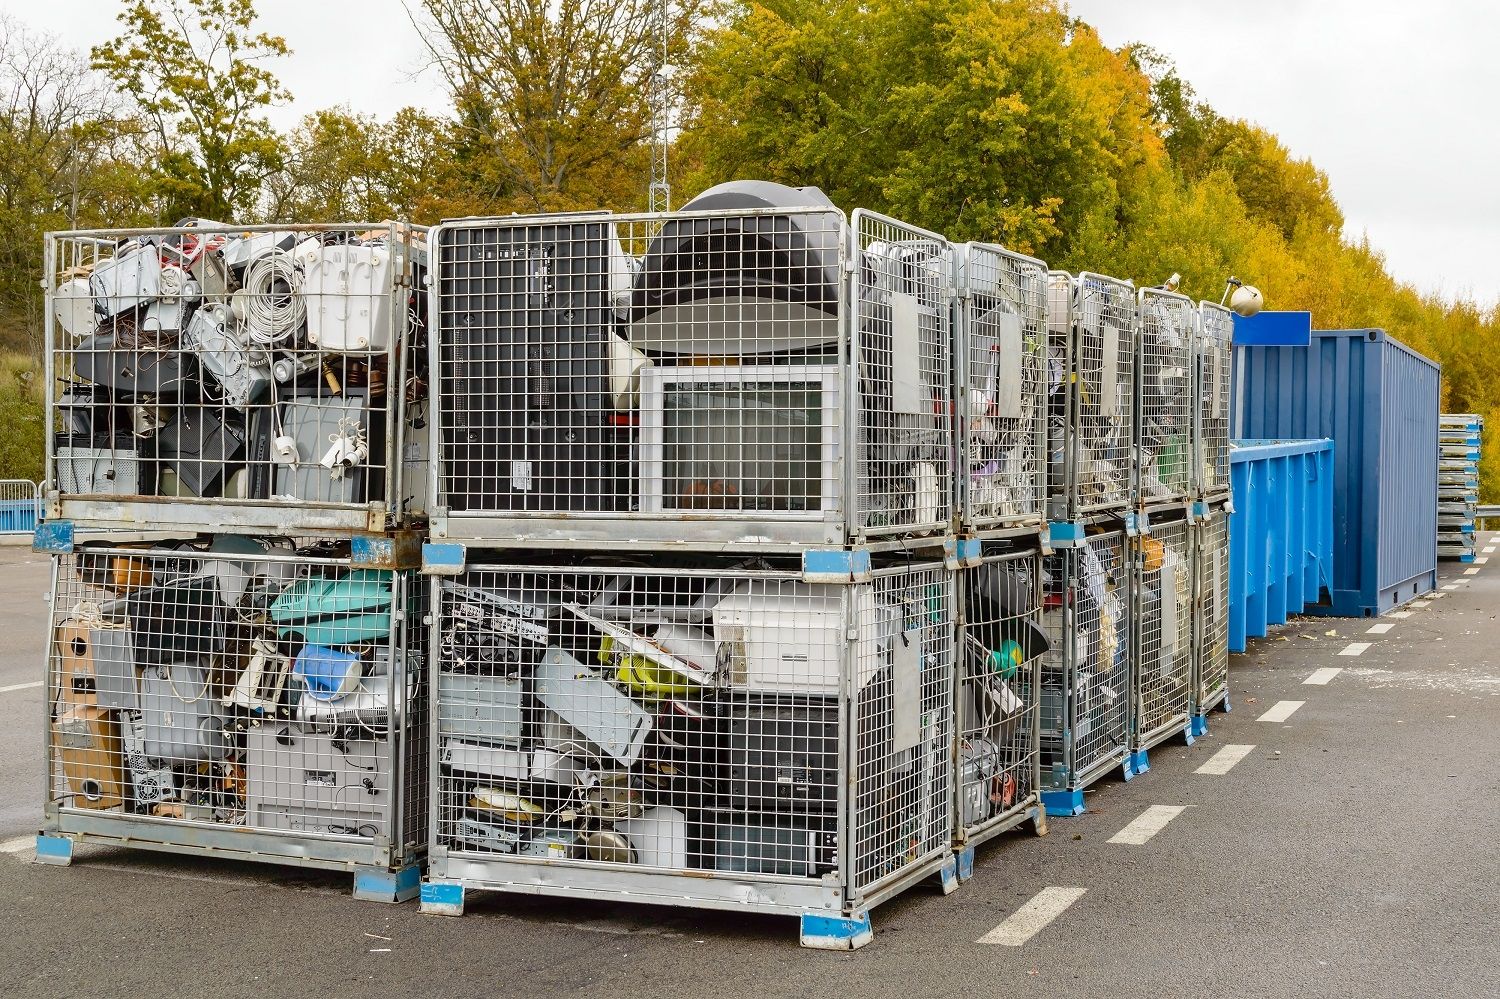 パソコンを含む電子廃棄物は、リサイクル資源ゴミとして廃棄されます。